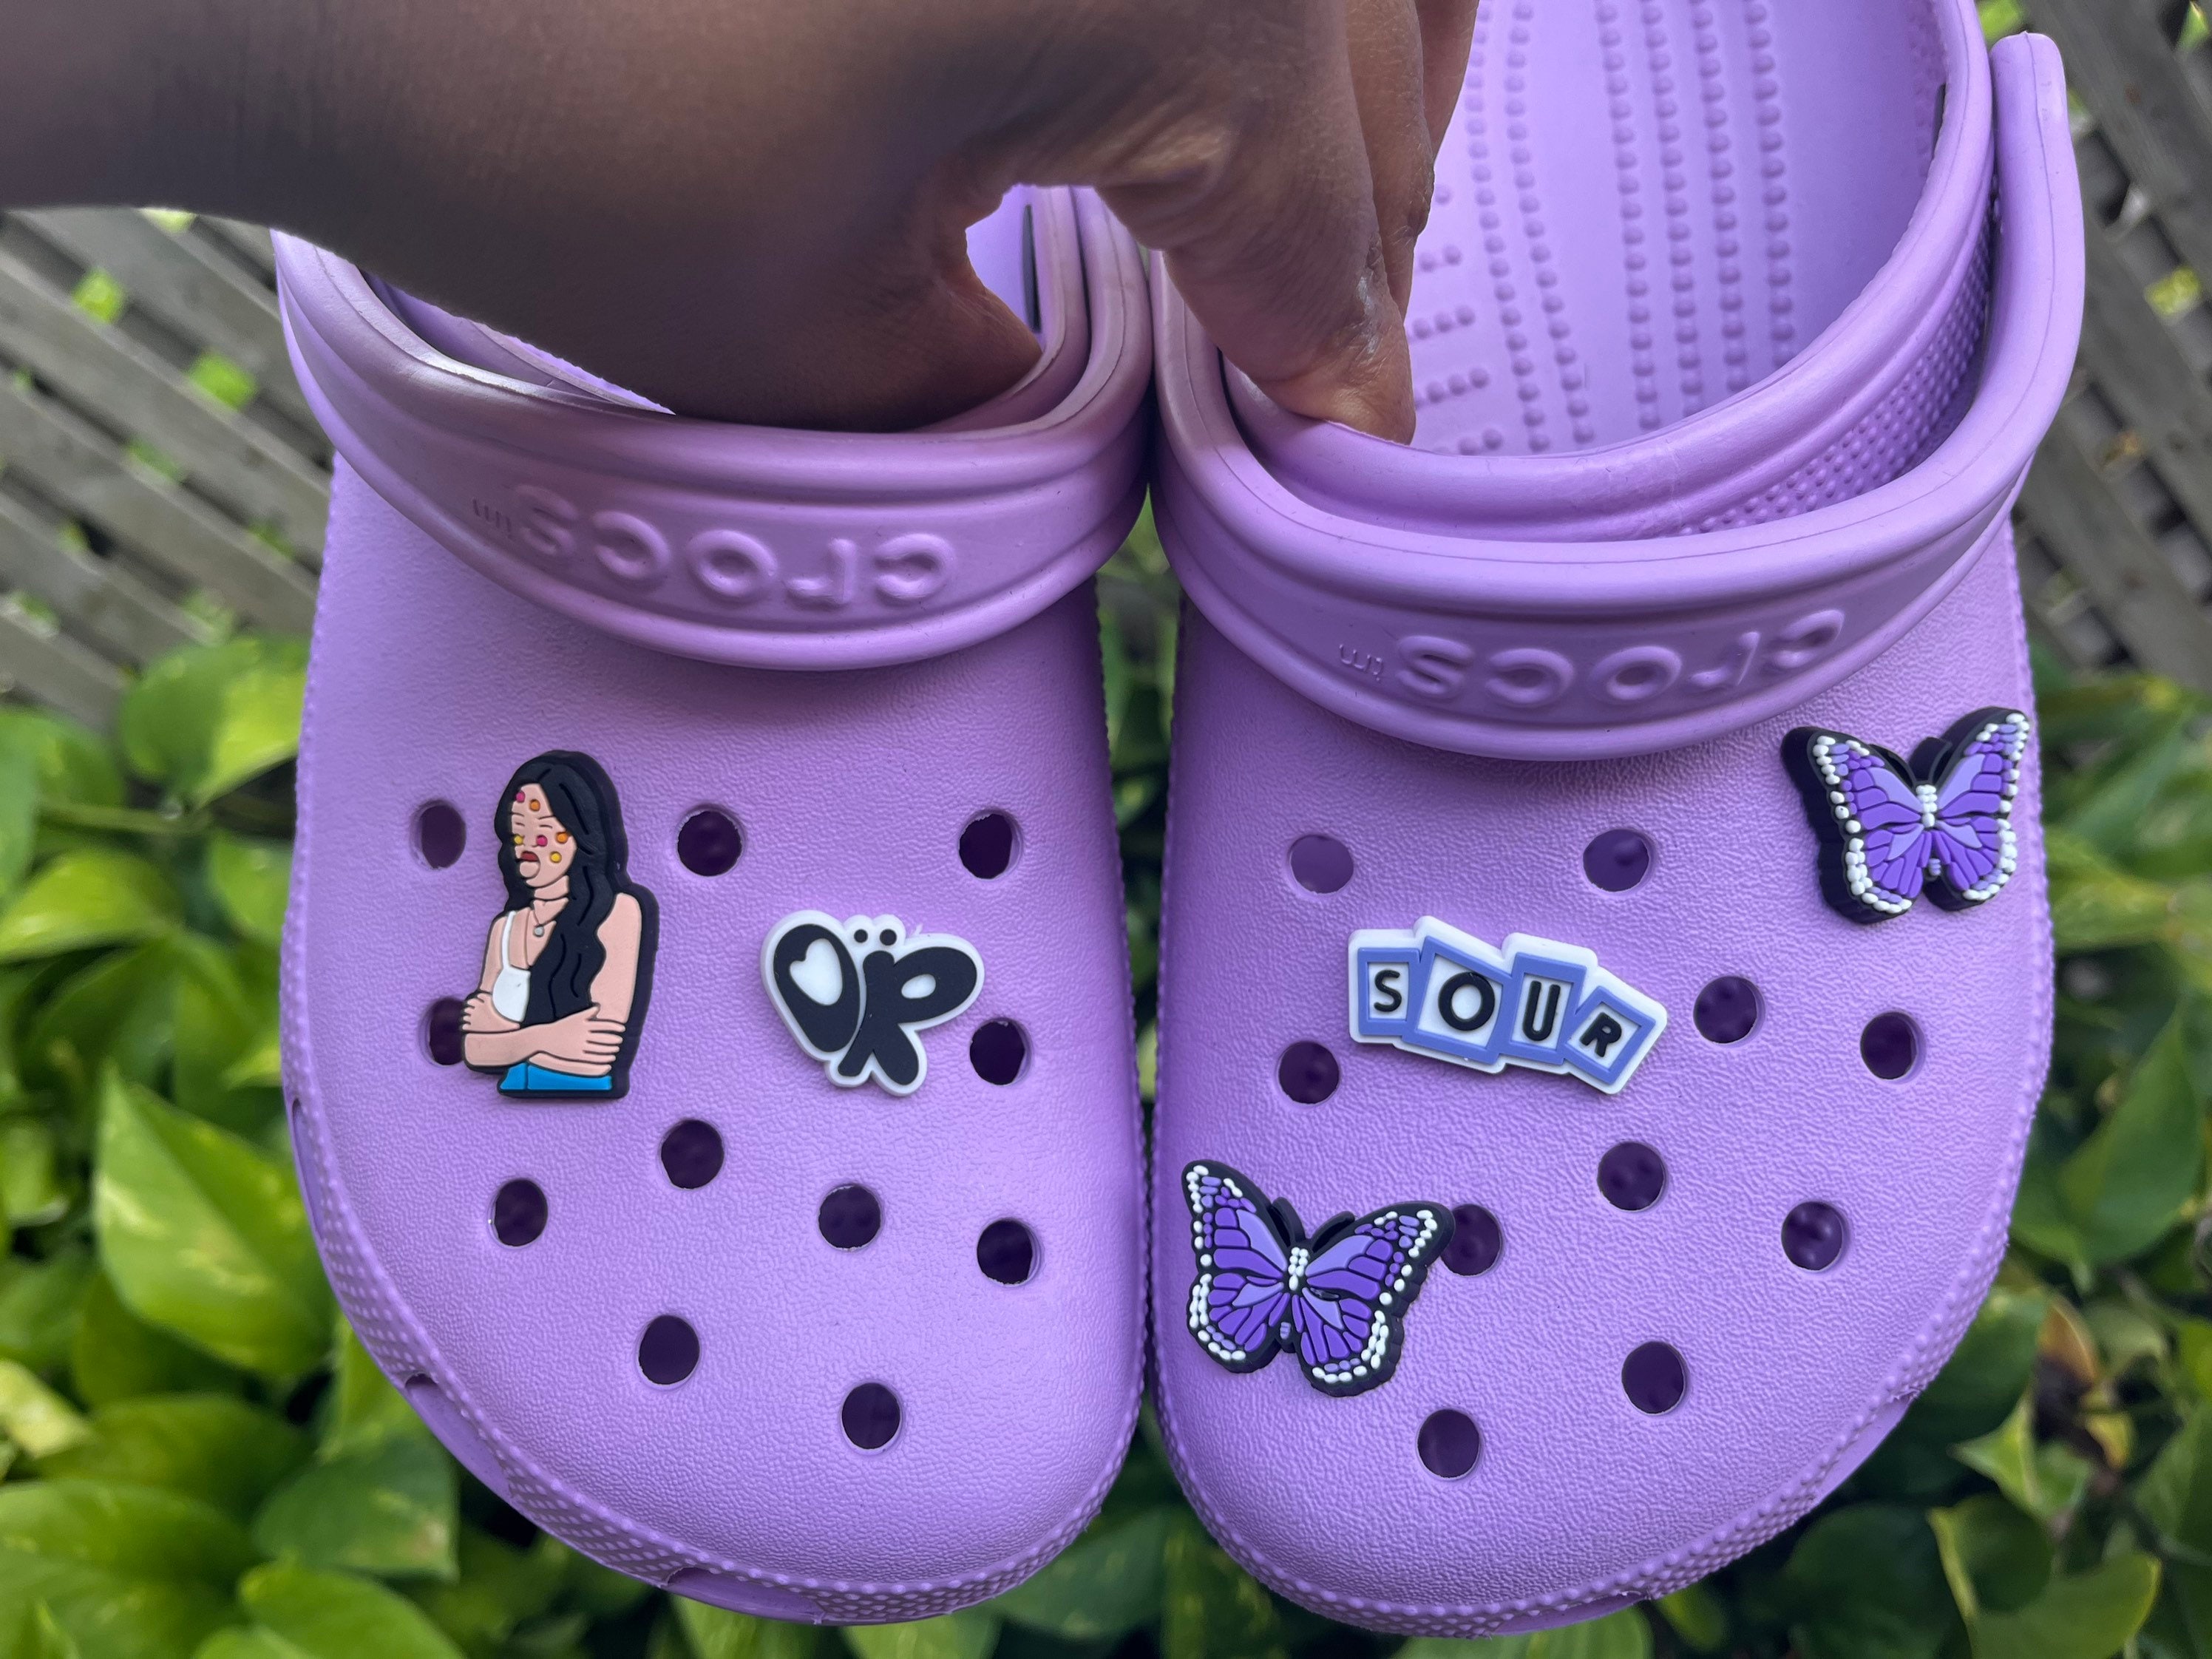 Olivia Rodrigo Croc Clog Shoe Charms - Etsy